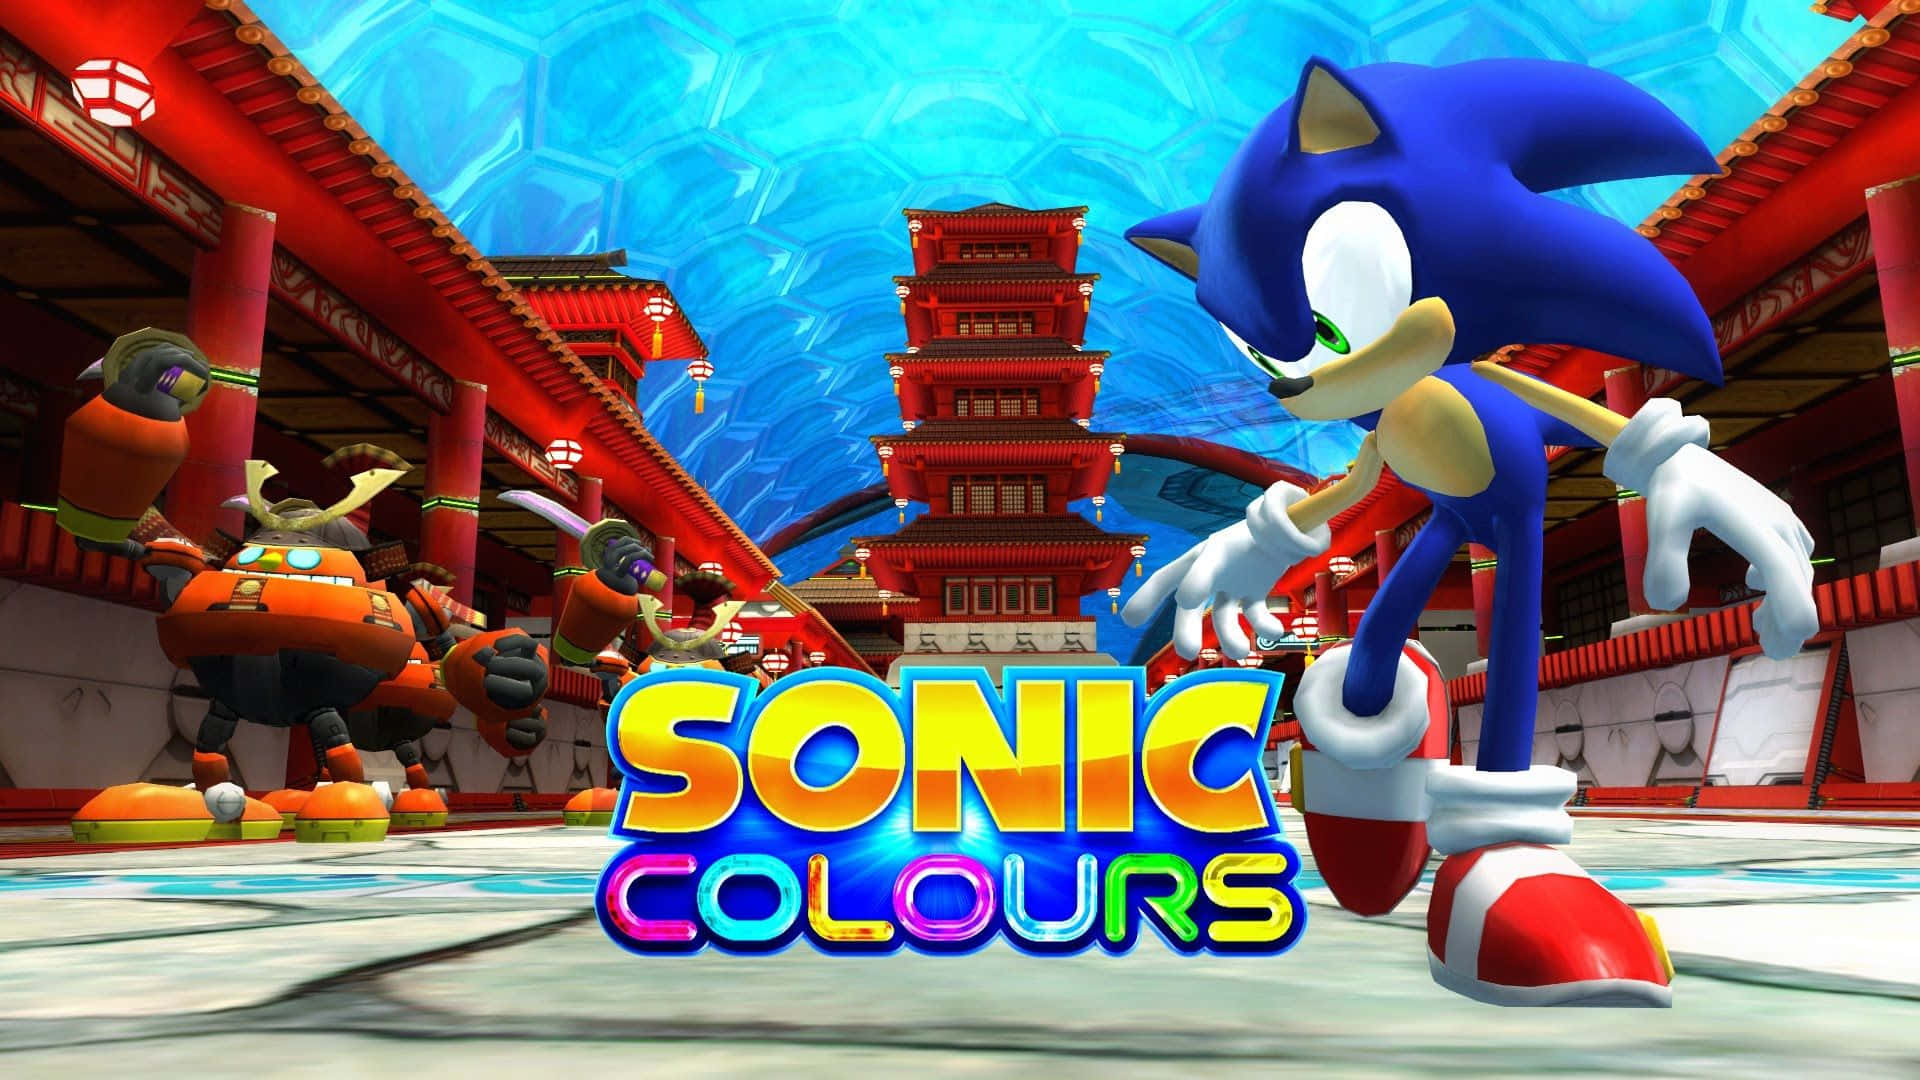 Derlegendäre Sonic Rast Durch Die Lebhafte Und Bunte Welt Von Sonic Colors. Wallpaper